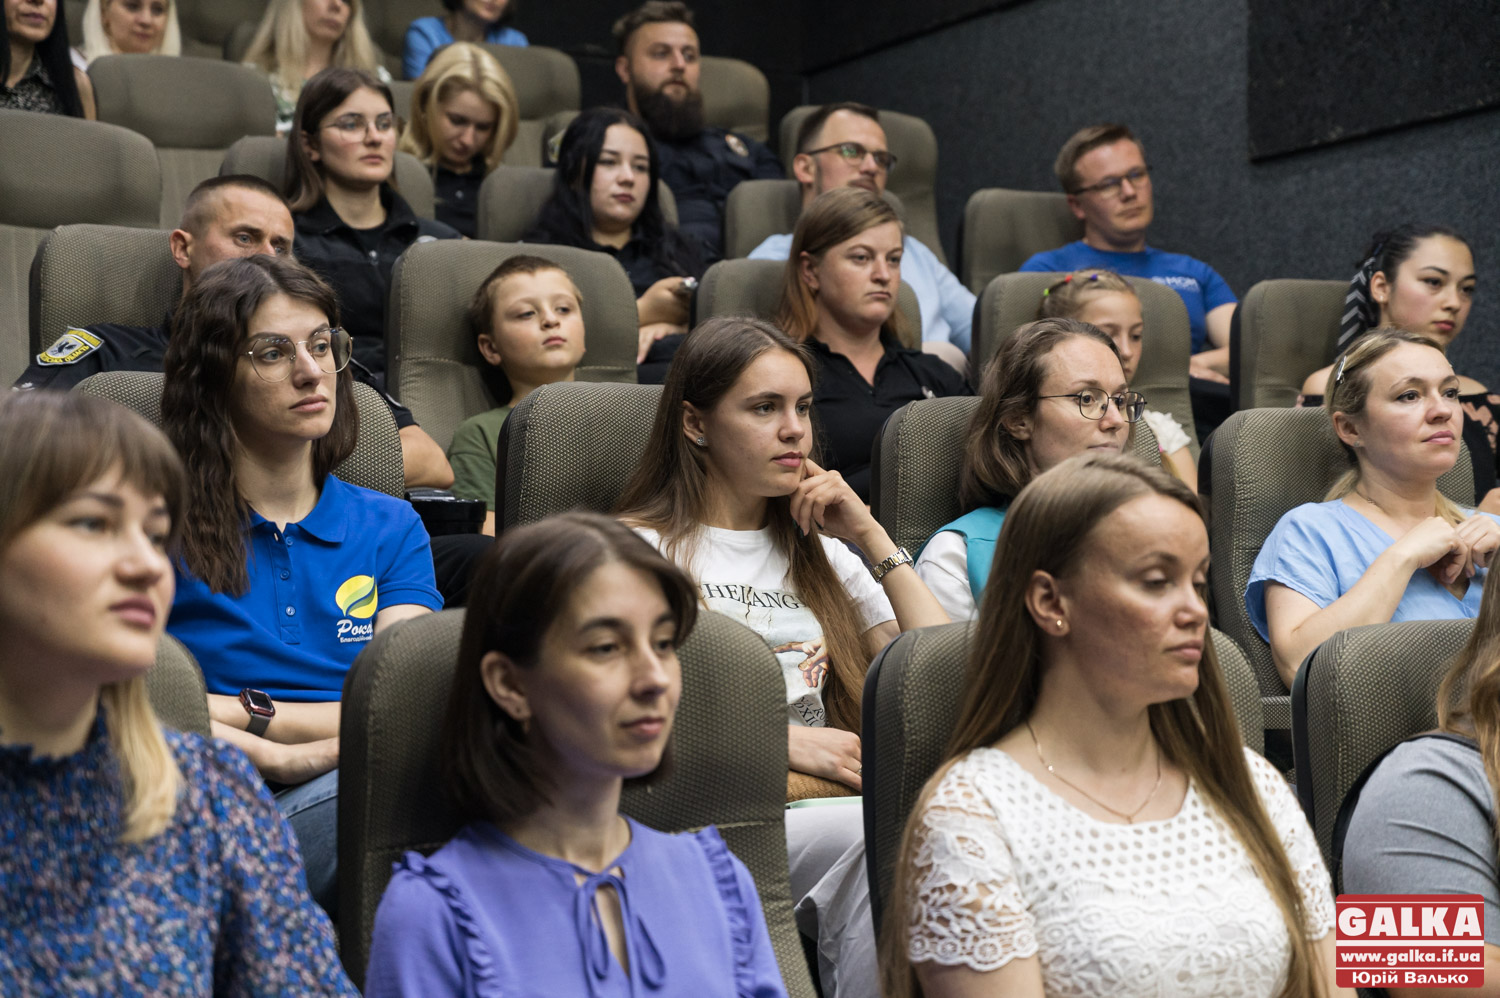 Мовчання вбиває: у Франківську презентували фільм про домашнє насильство “Поруш тишу” (ФОТО)